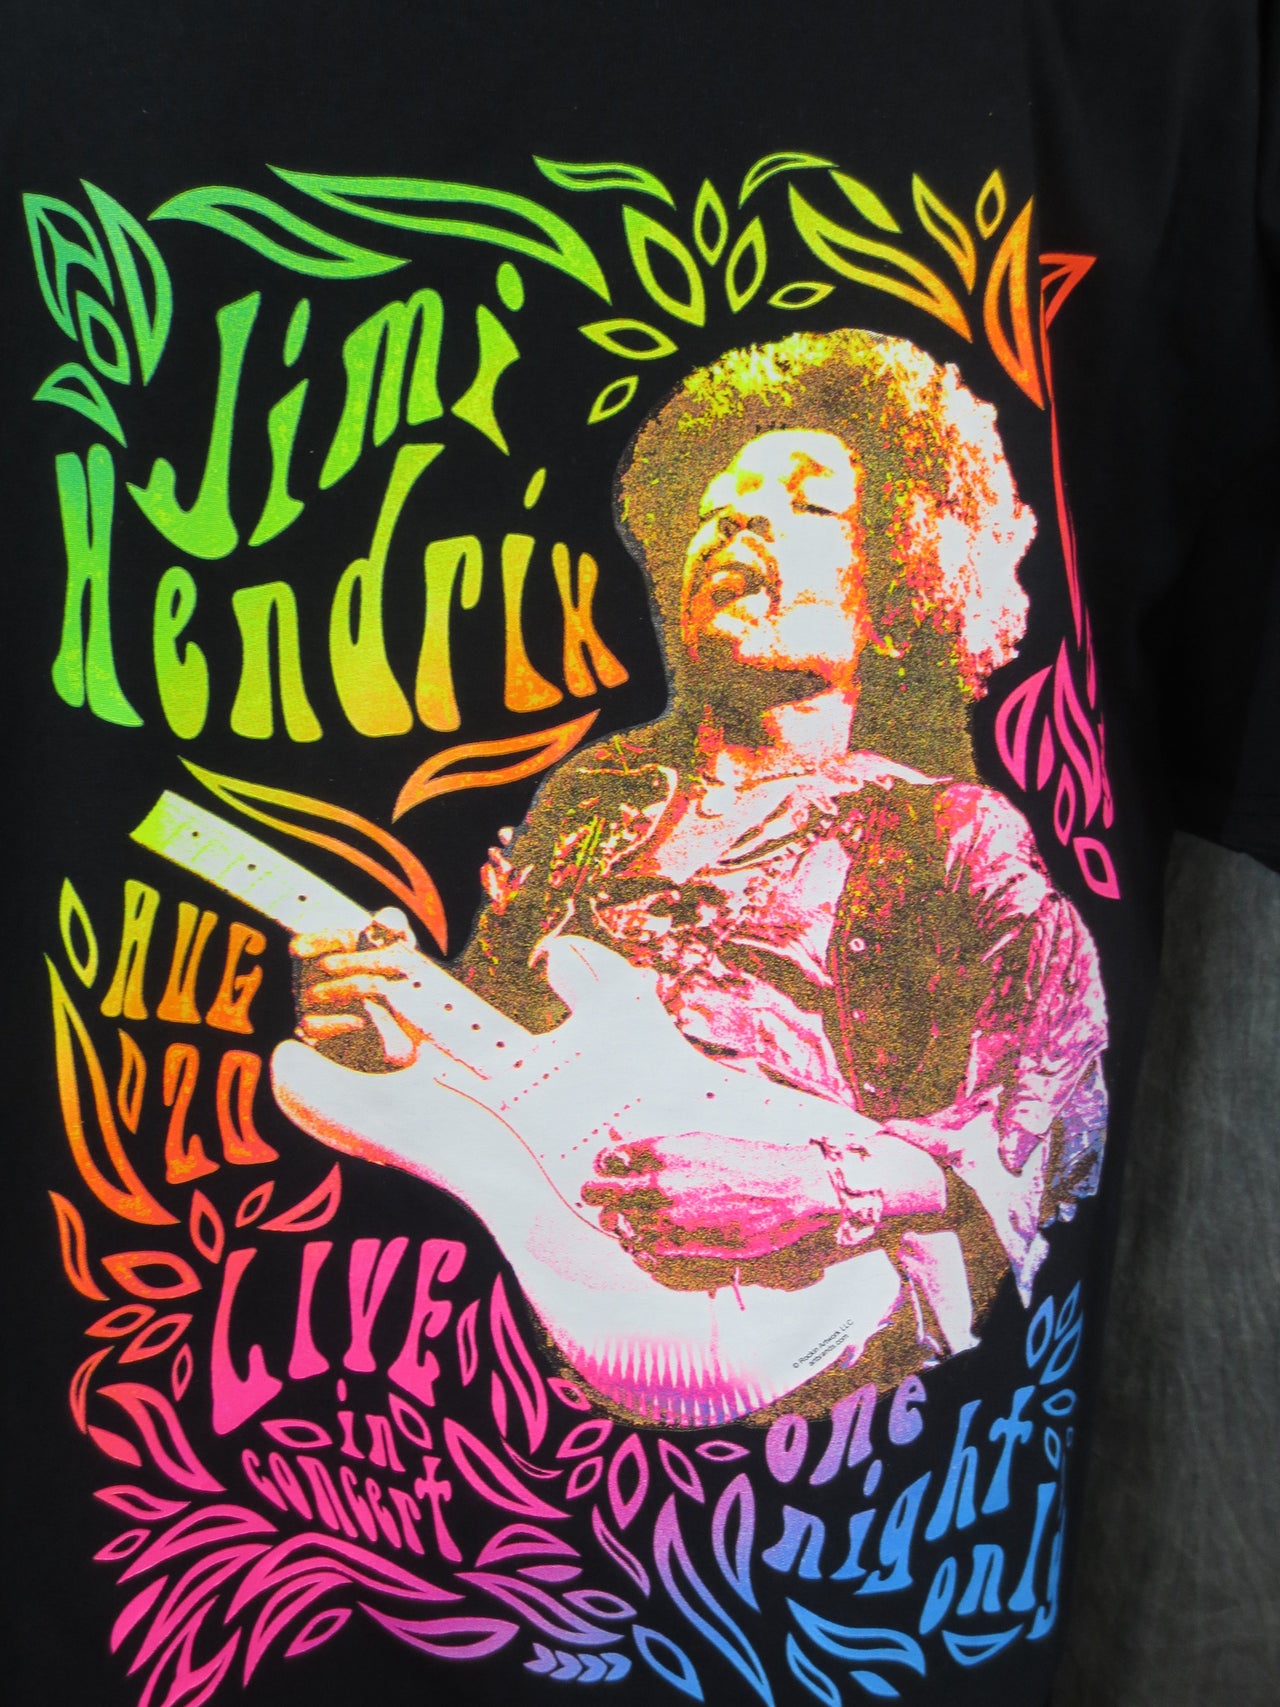 Jimi Hendrix Neon One Night tshirt - TshirtNow.net - 2